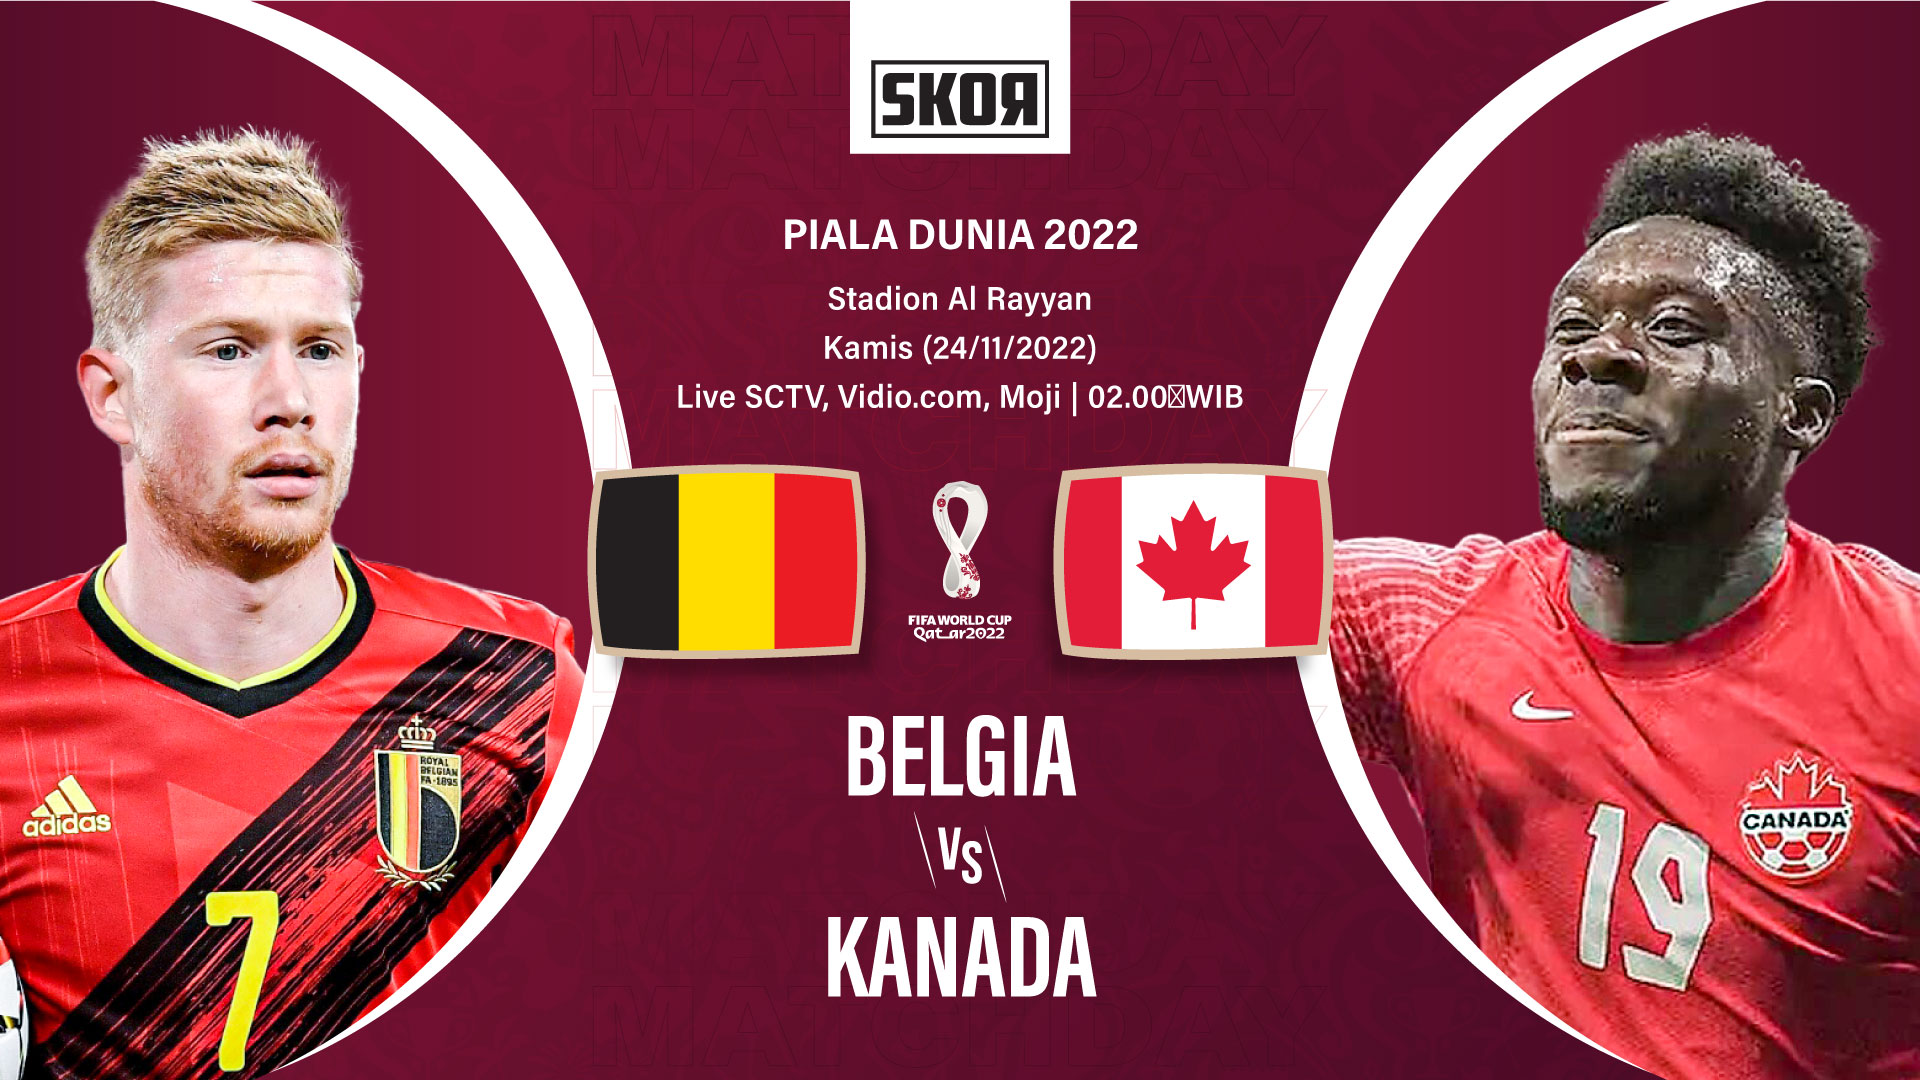 Piala Dunia 2022: 5 Fakta Menarik setelah Laga Belgia vs Kanada